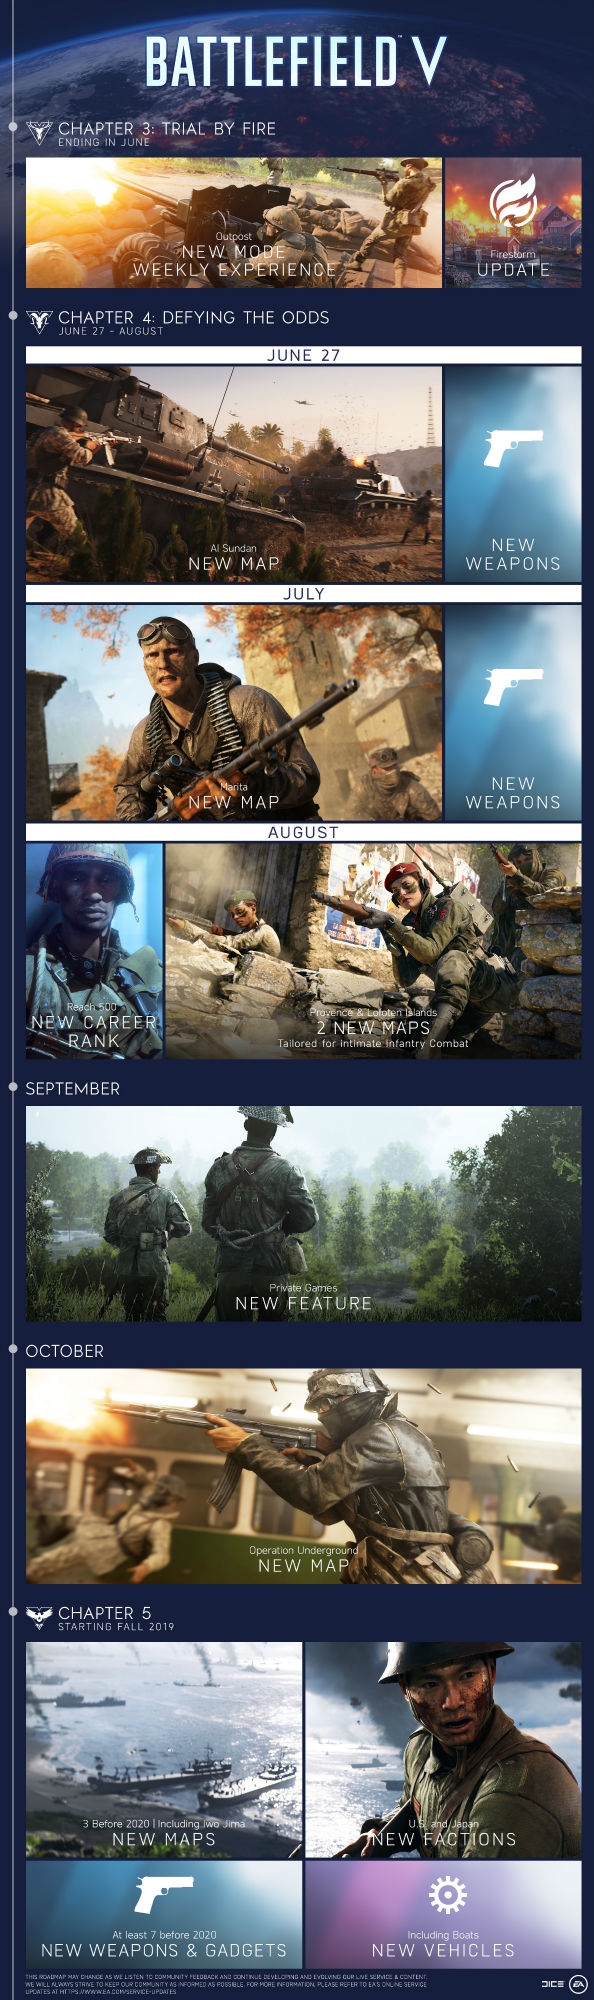 Battlefield 5 novos mapas e novidades